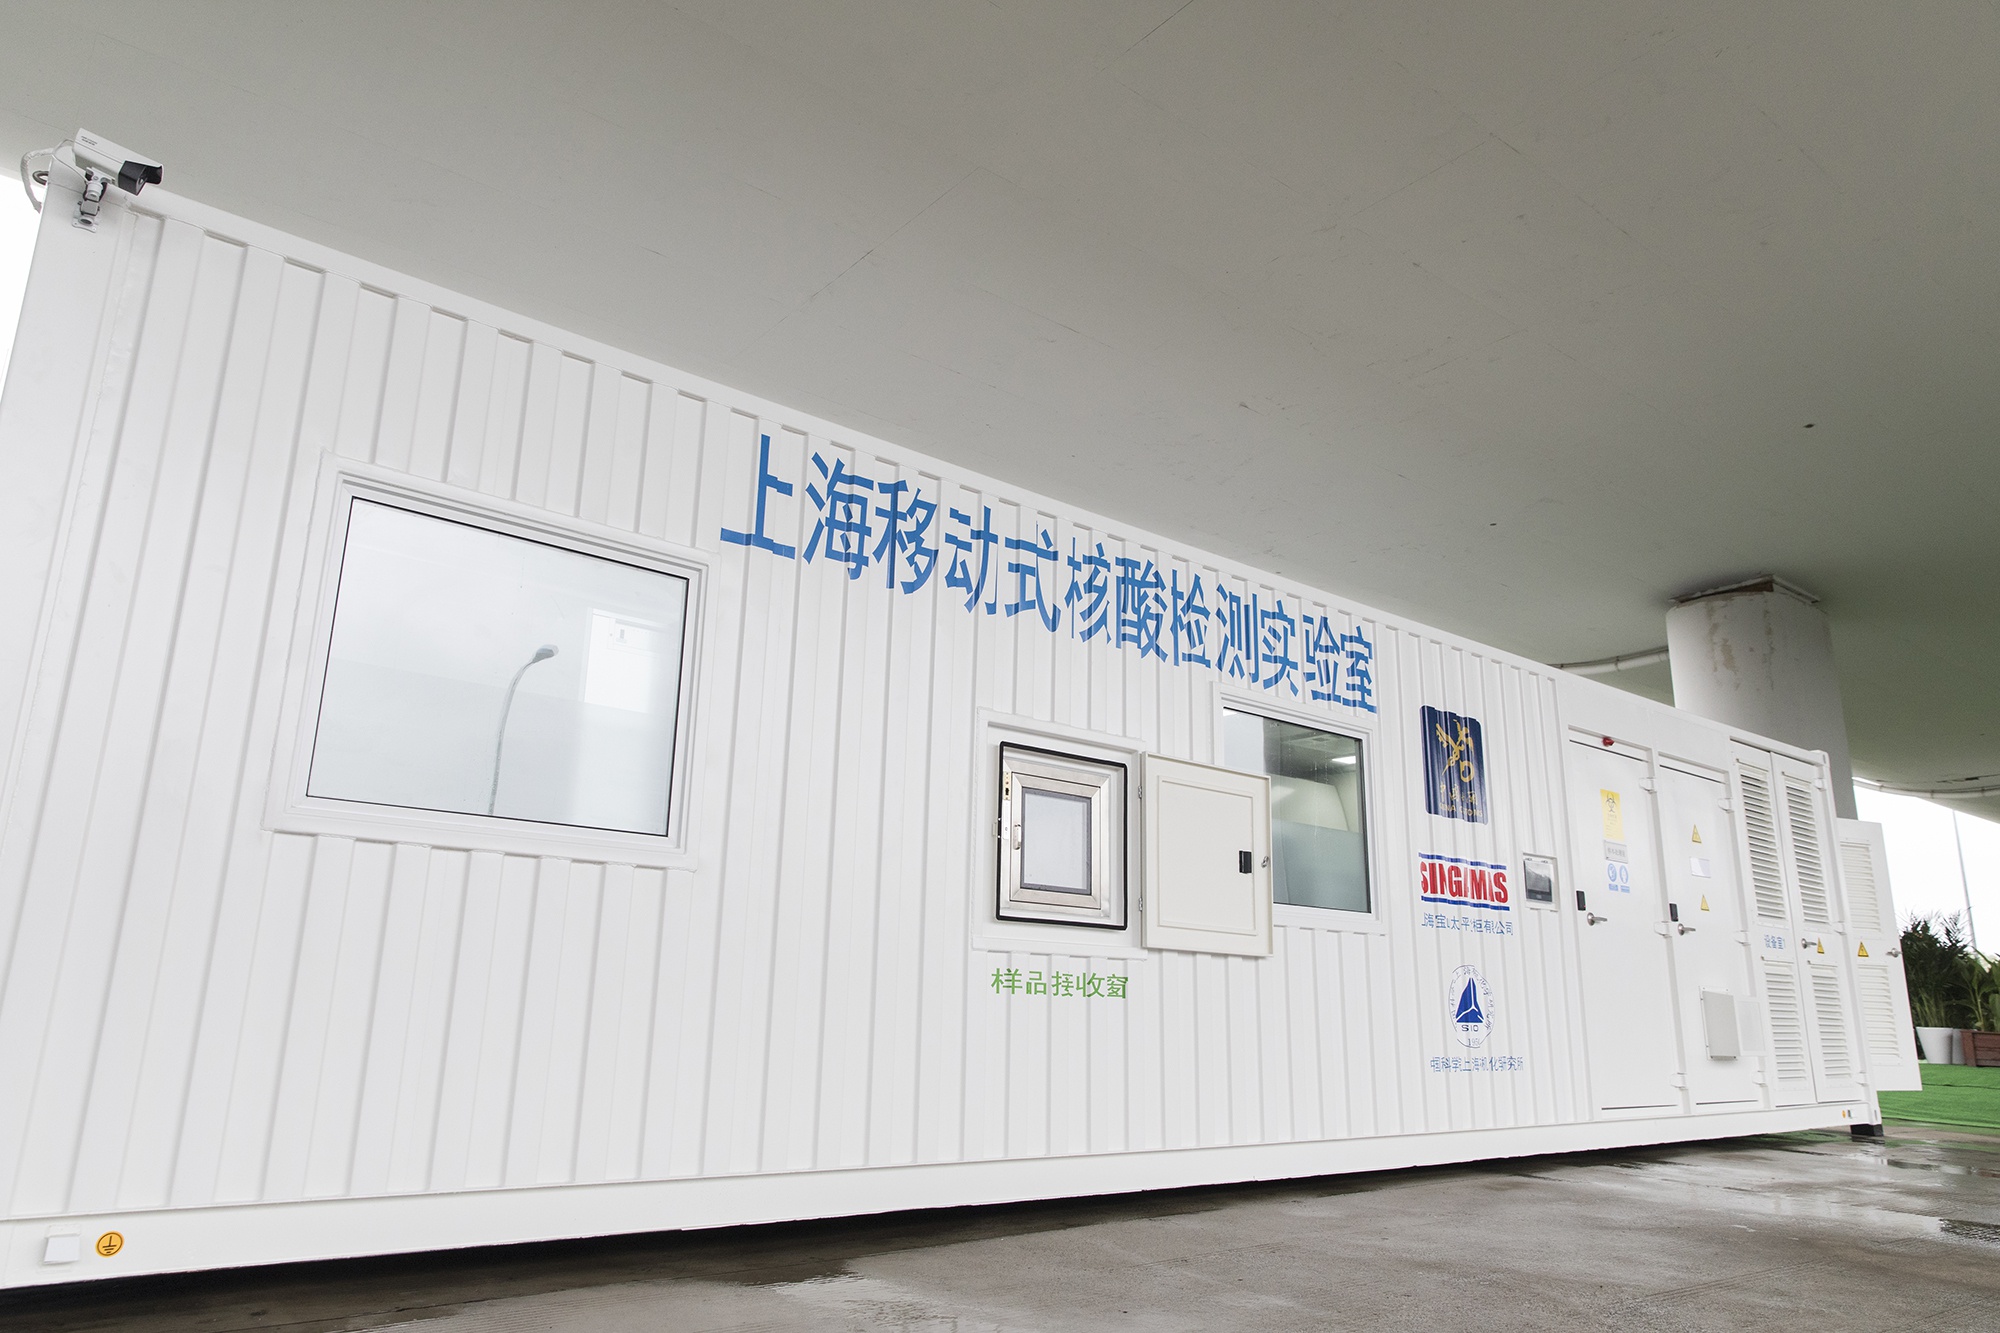 "上海移动式核酸检测方舱实验室"的外观为一个标准集装箱 俞陶然摄